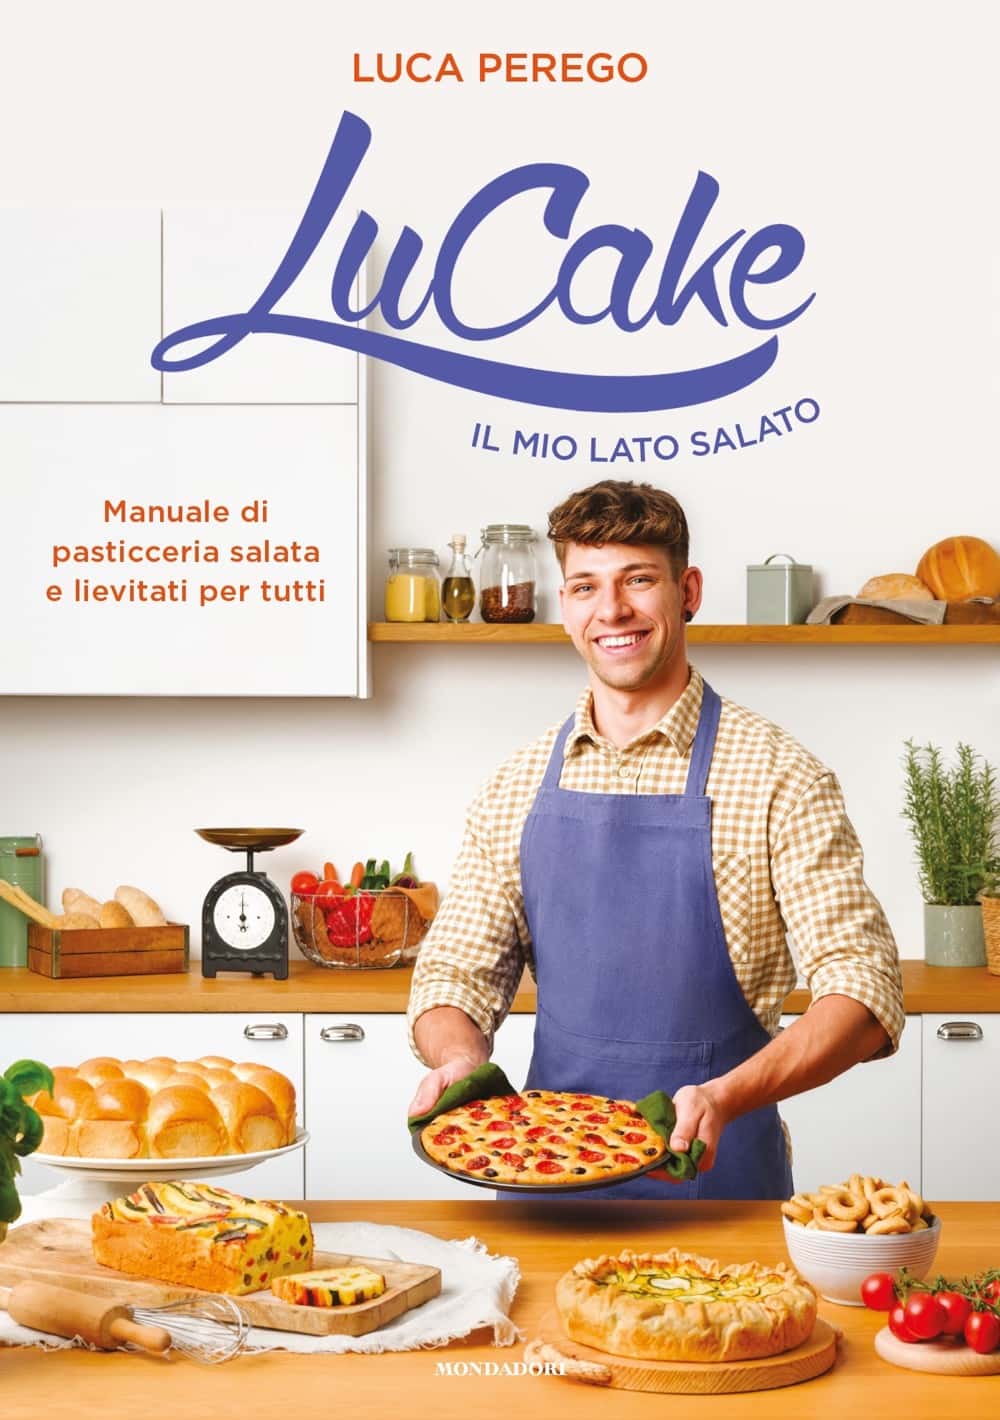 copertina Lucake il mio lato salato